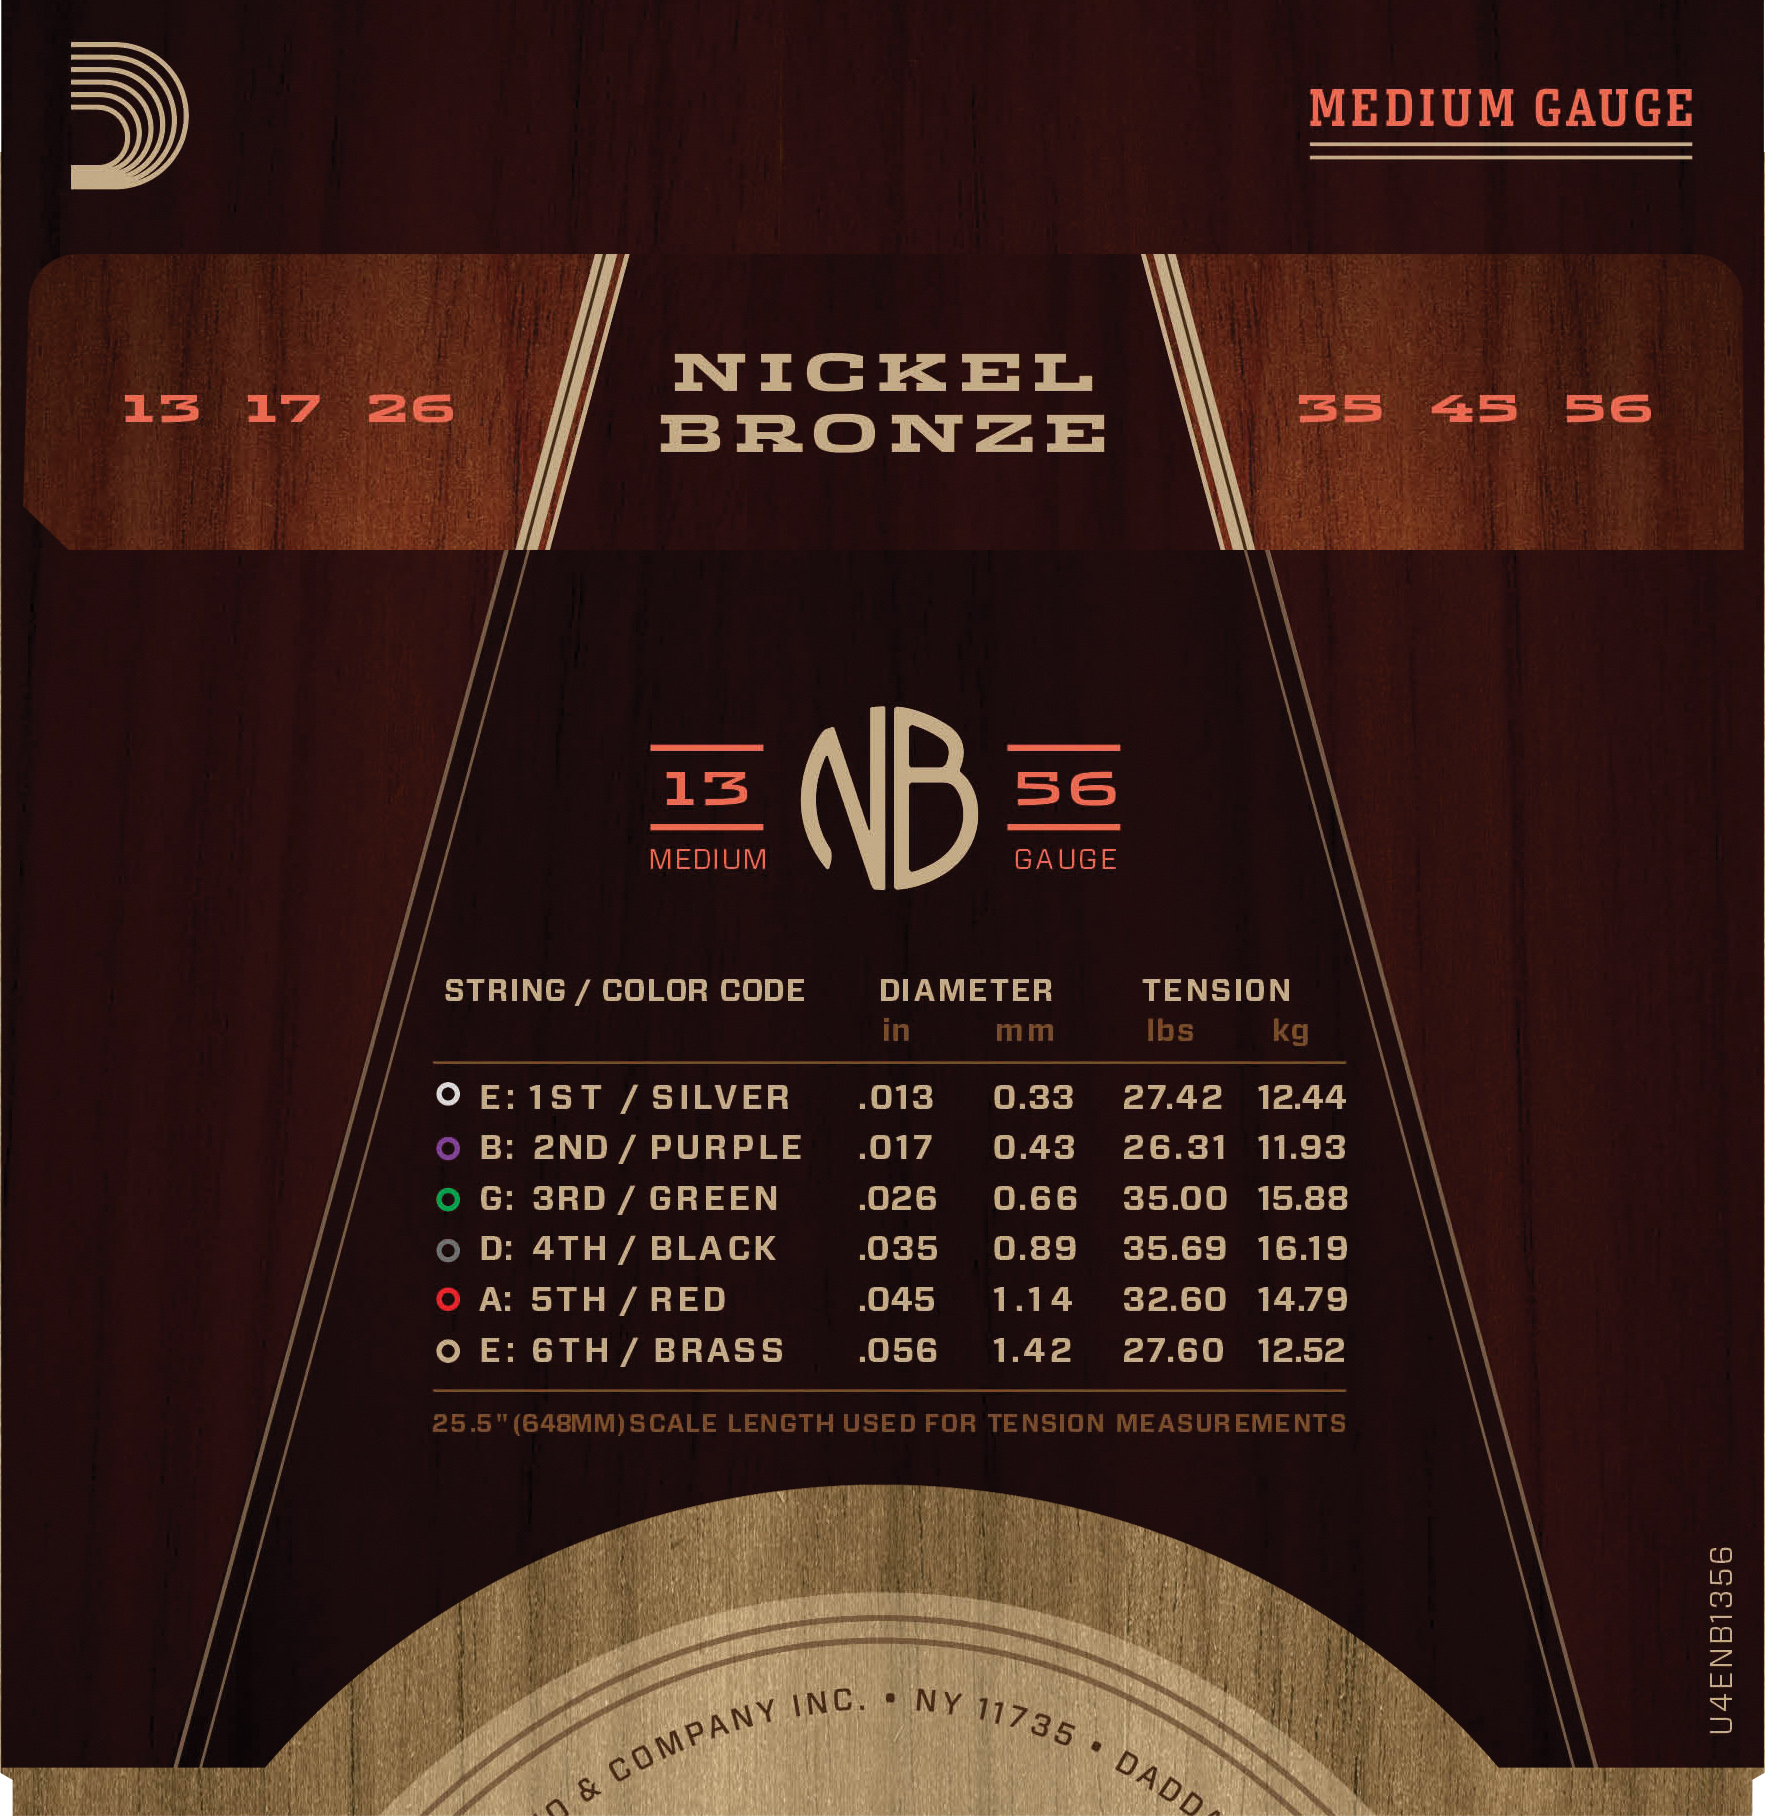 NB1356 Nickel Bronze Set 013-056